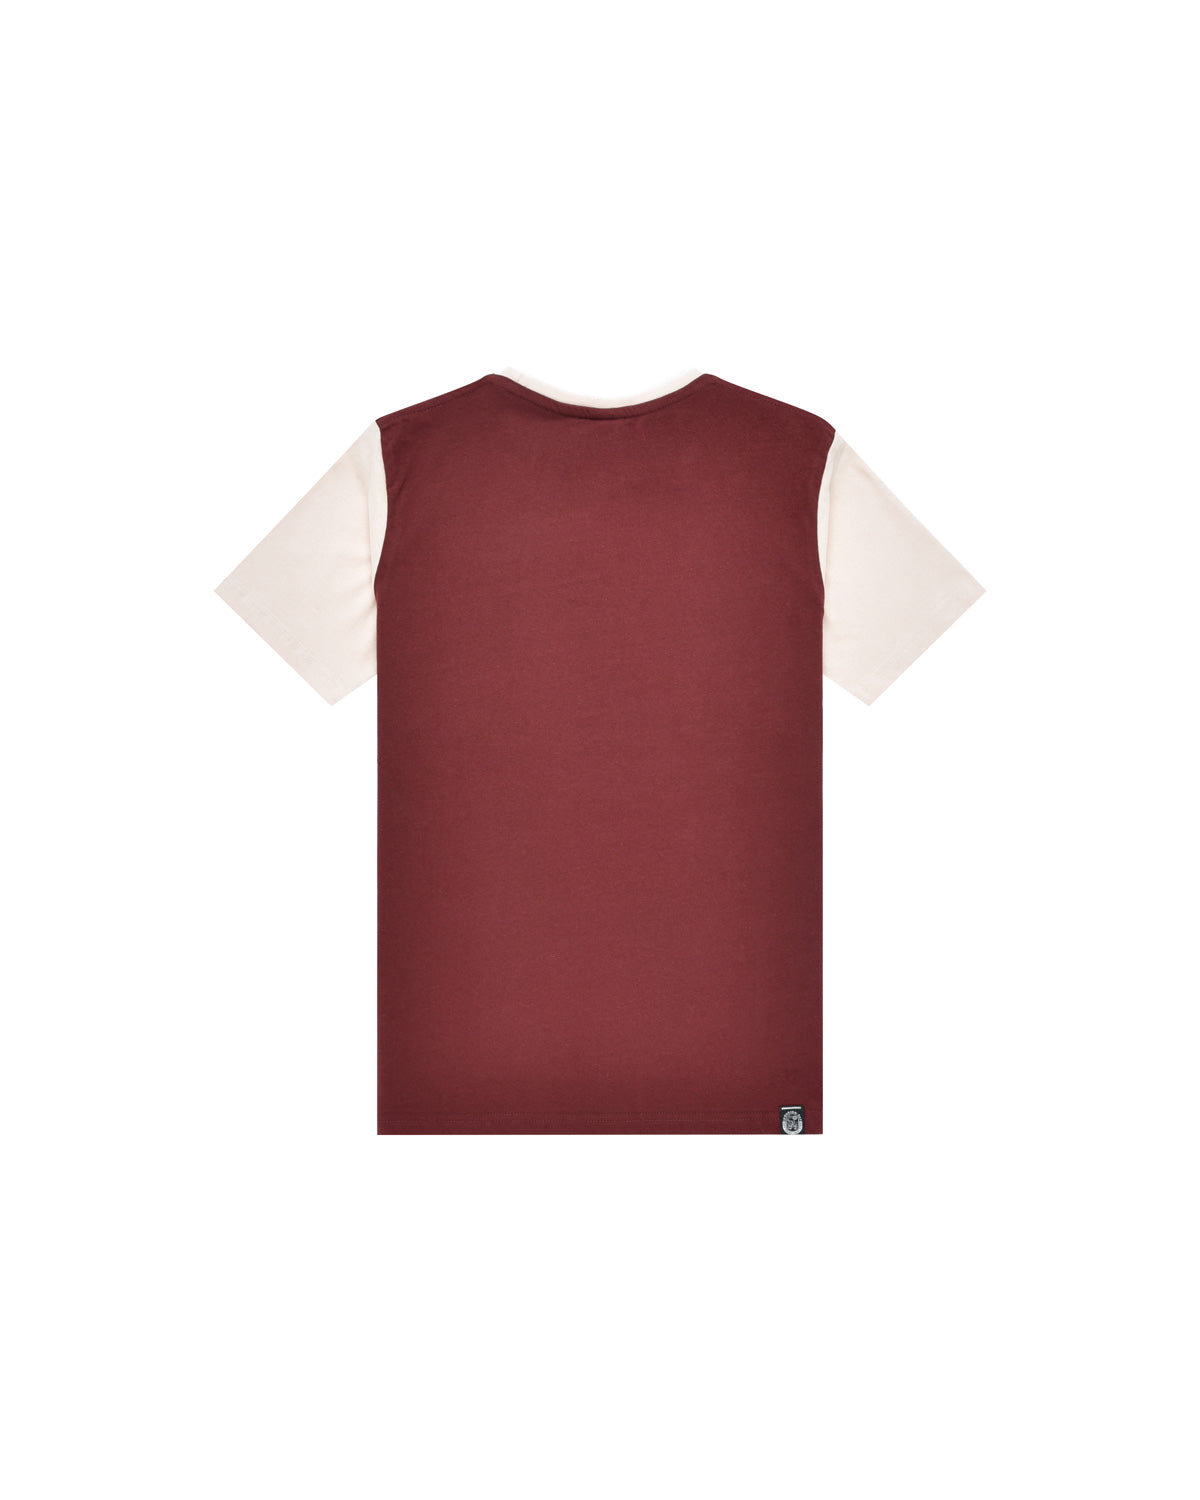 Bambino | T-Shirt 100% Cotone Color Mattone Con Stampa "High Voltage"